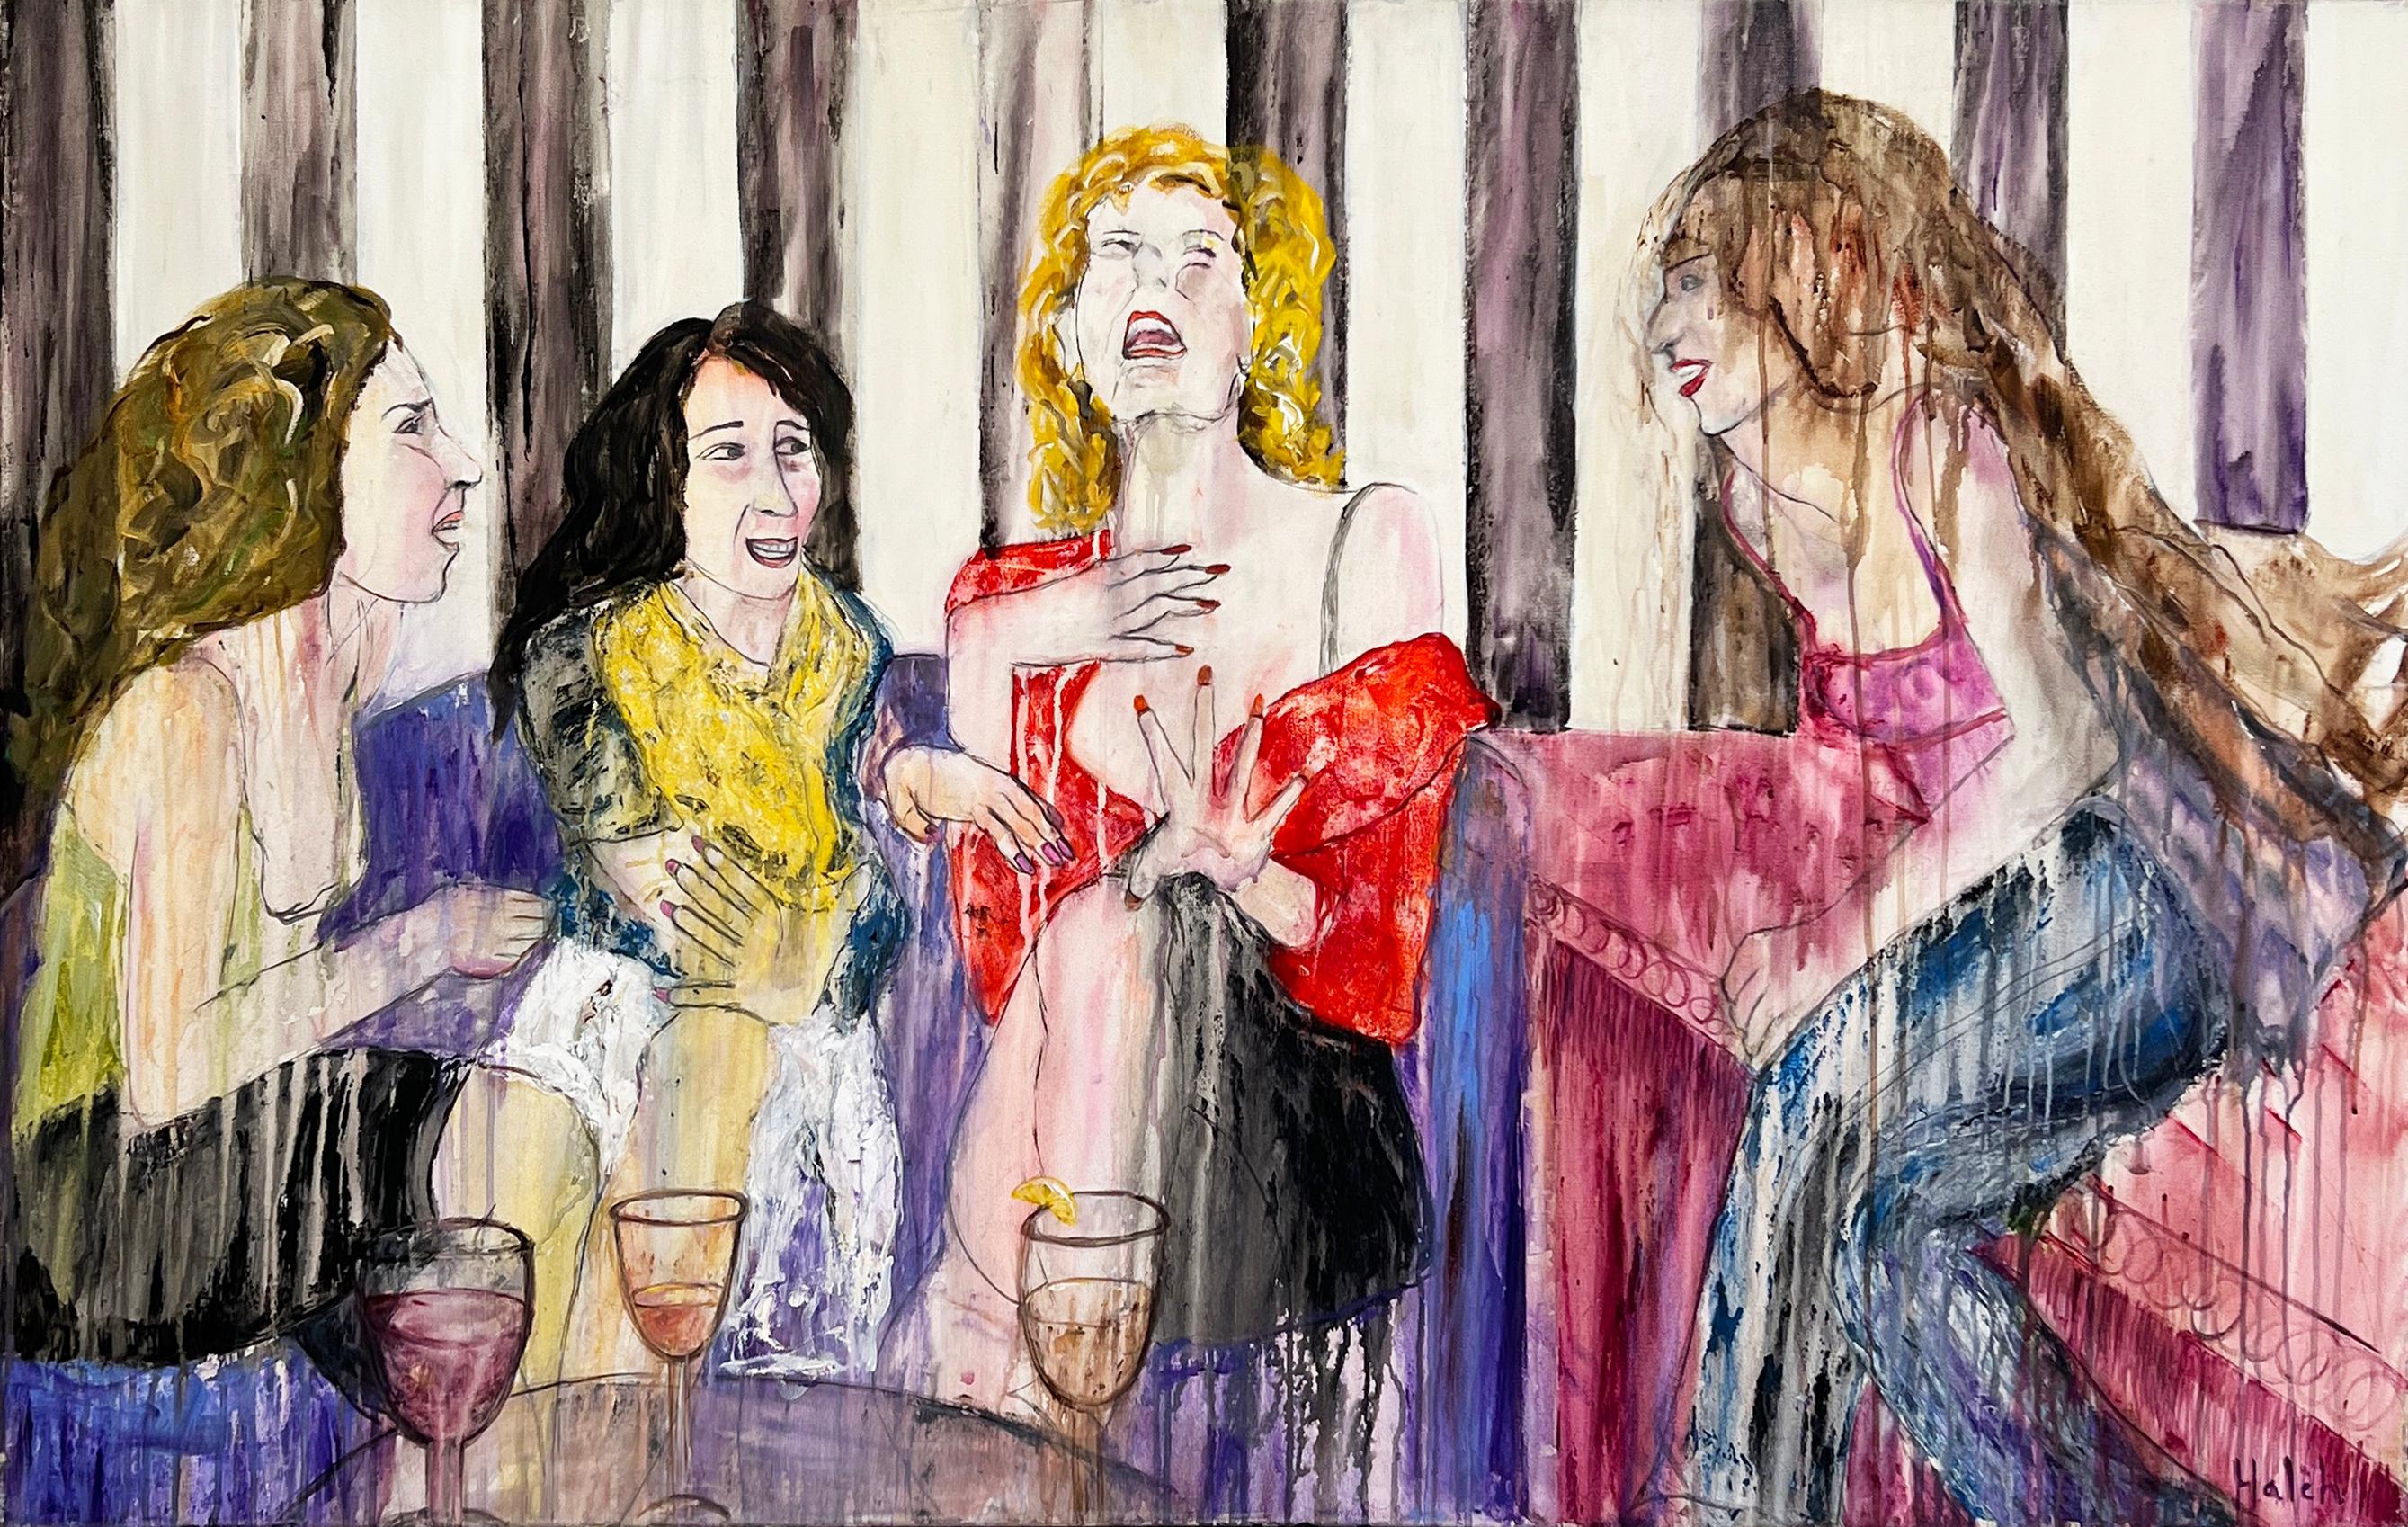 Über das Kunstwerk: 


In Haleh Mashians Mixed-Media-Arbeit "About Last Night" führen vier Frauen ein angeregtes Gespräch und erinnern sich an ihre Heldentaten vom Vorabend. Durch Mashians ausdrucksstarke Pinselführung und verschiedene Techniken zum